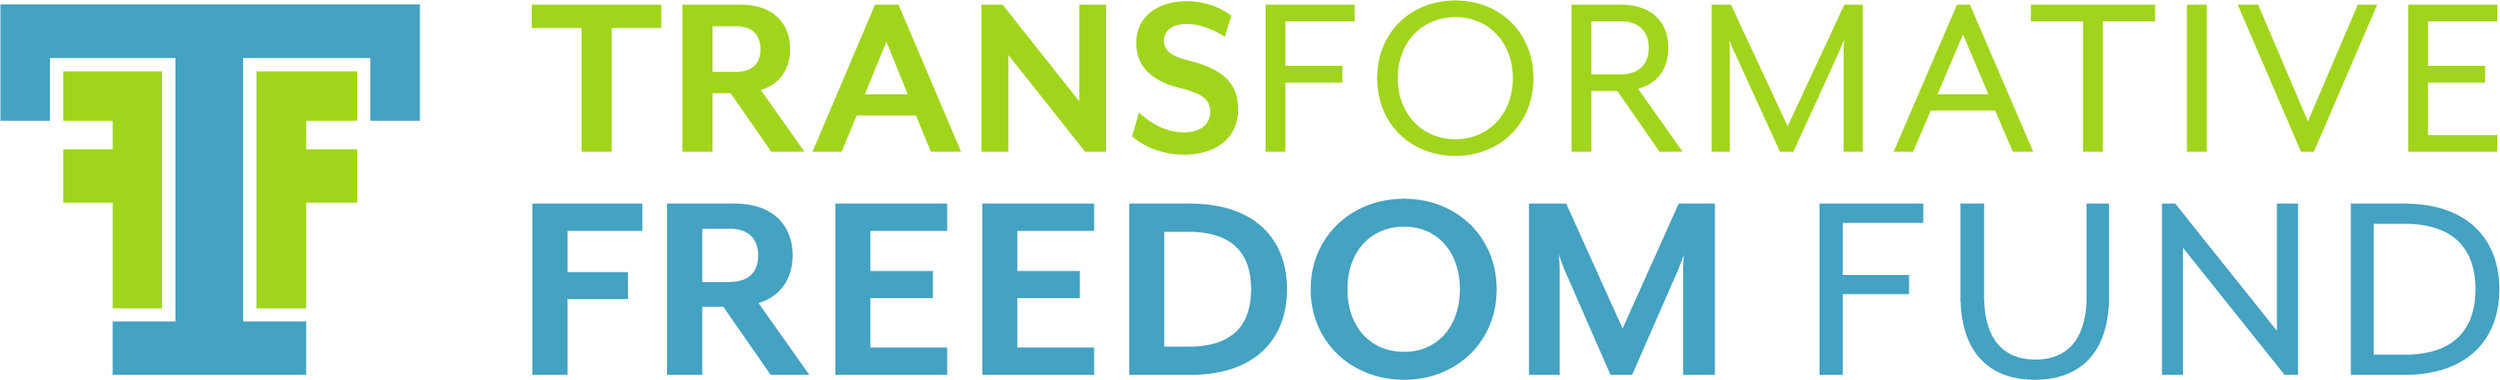 Transformative Freedom Fund